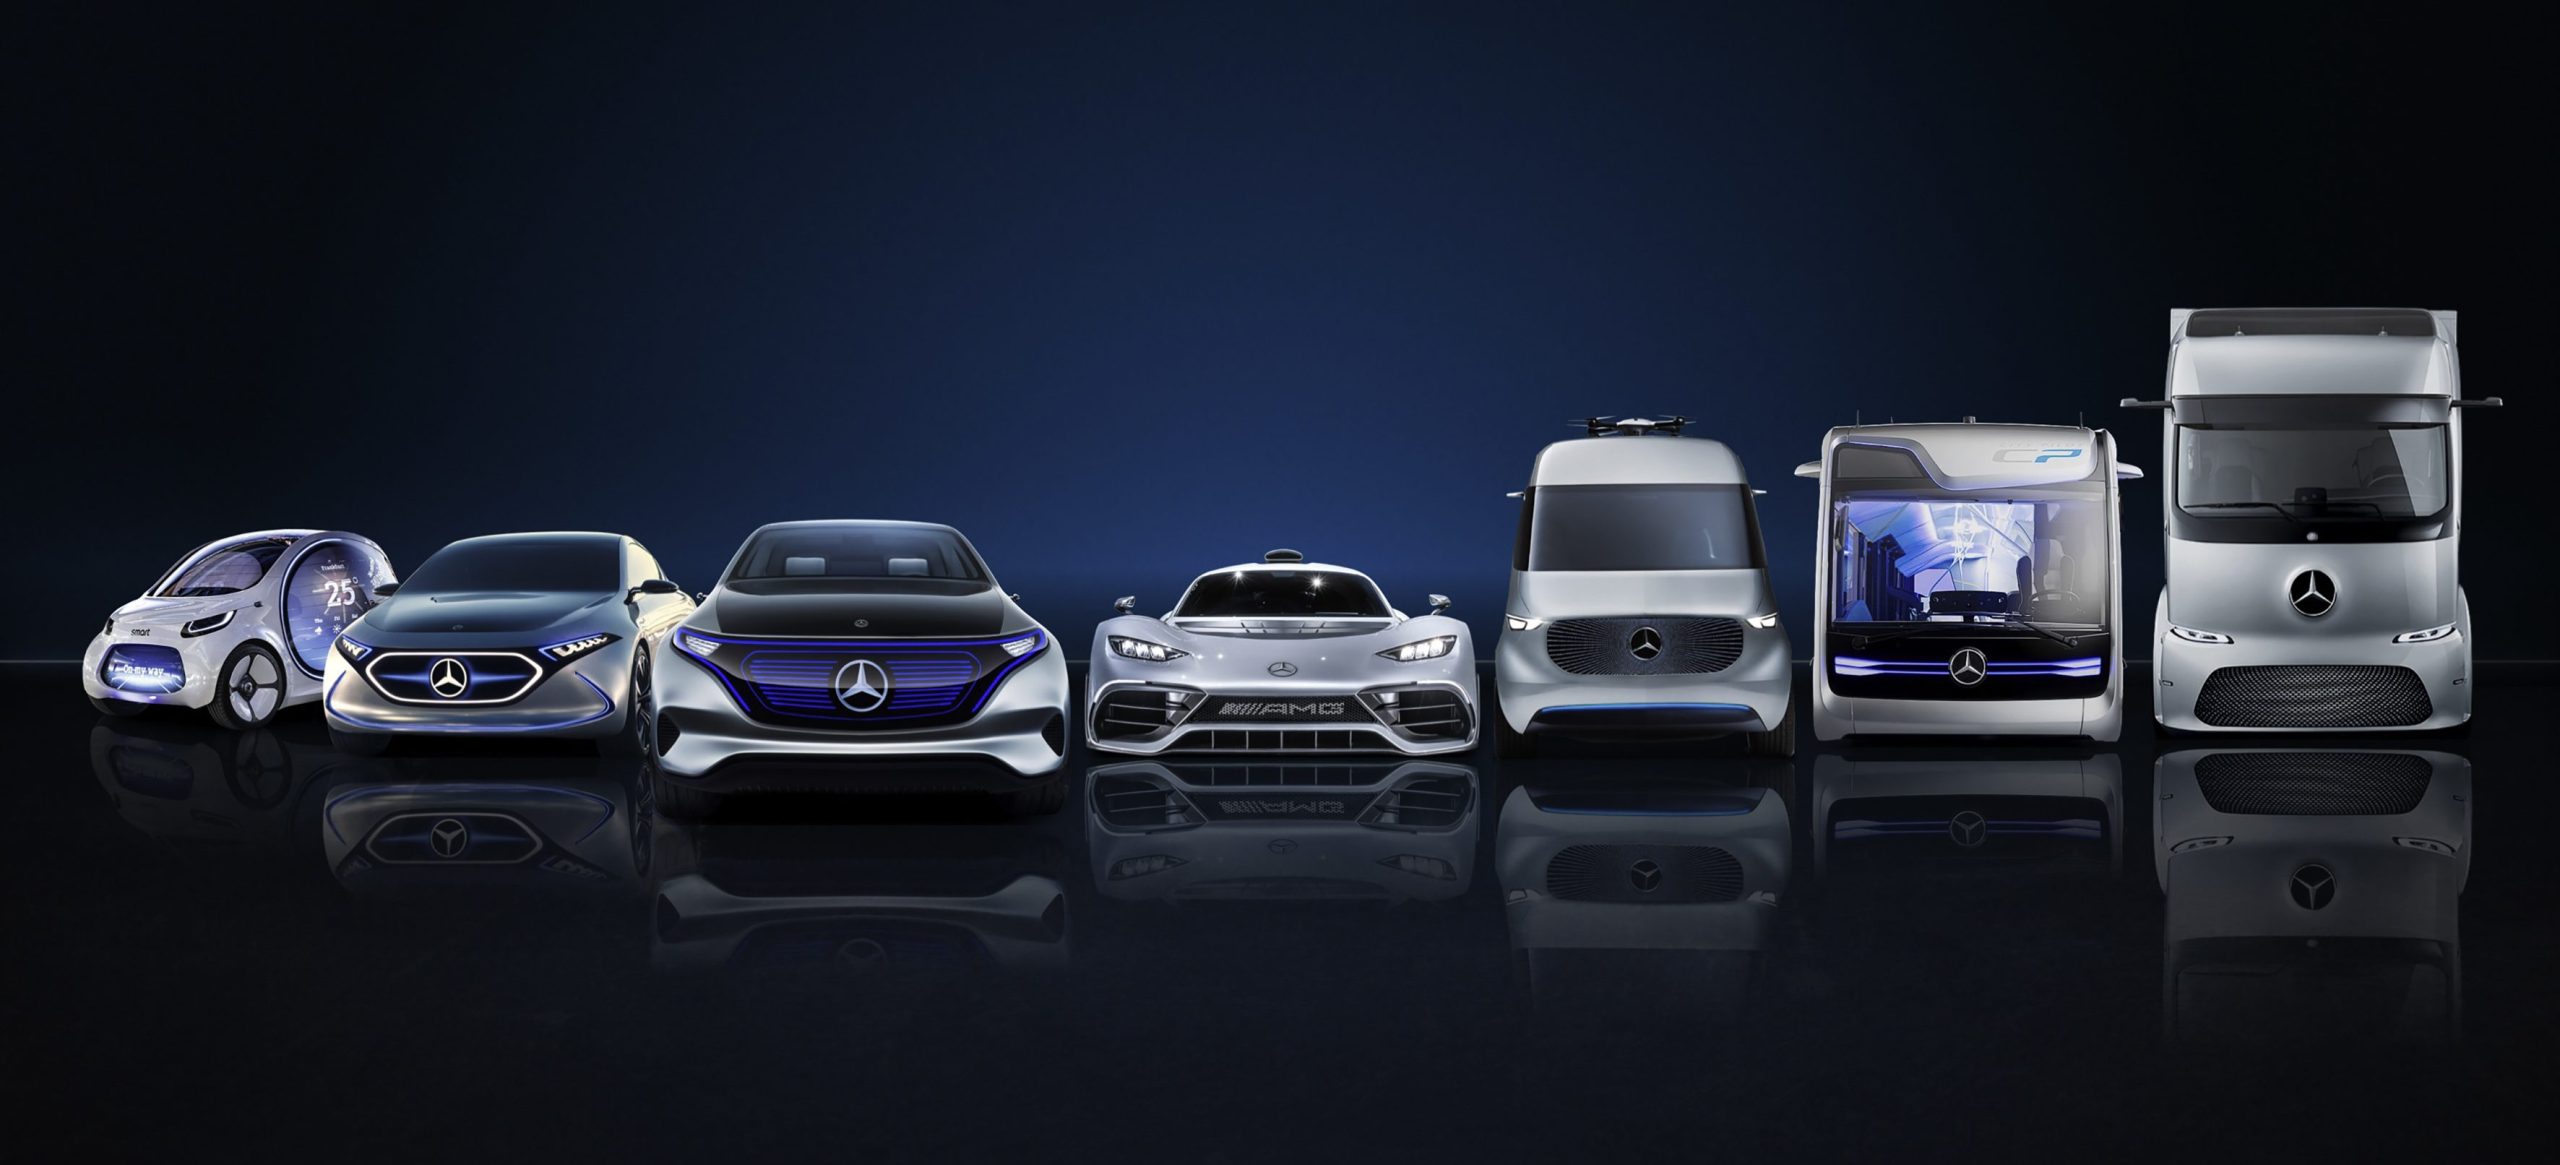 Daimler anuncia investimento de US$ 85,000 bilhões para acelerar a eletrificação de seus veículos.